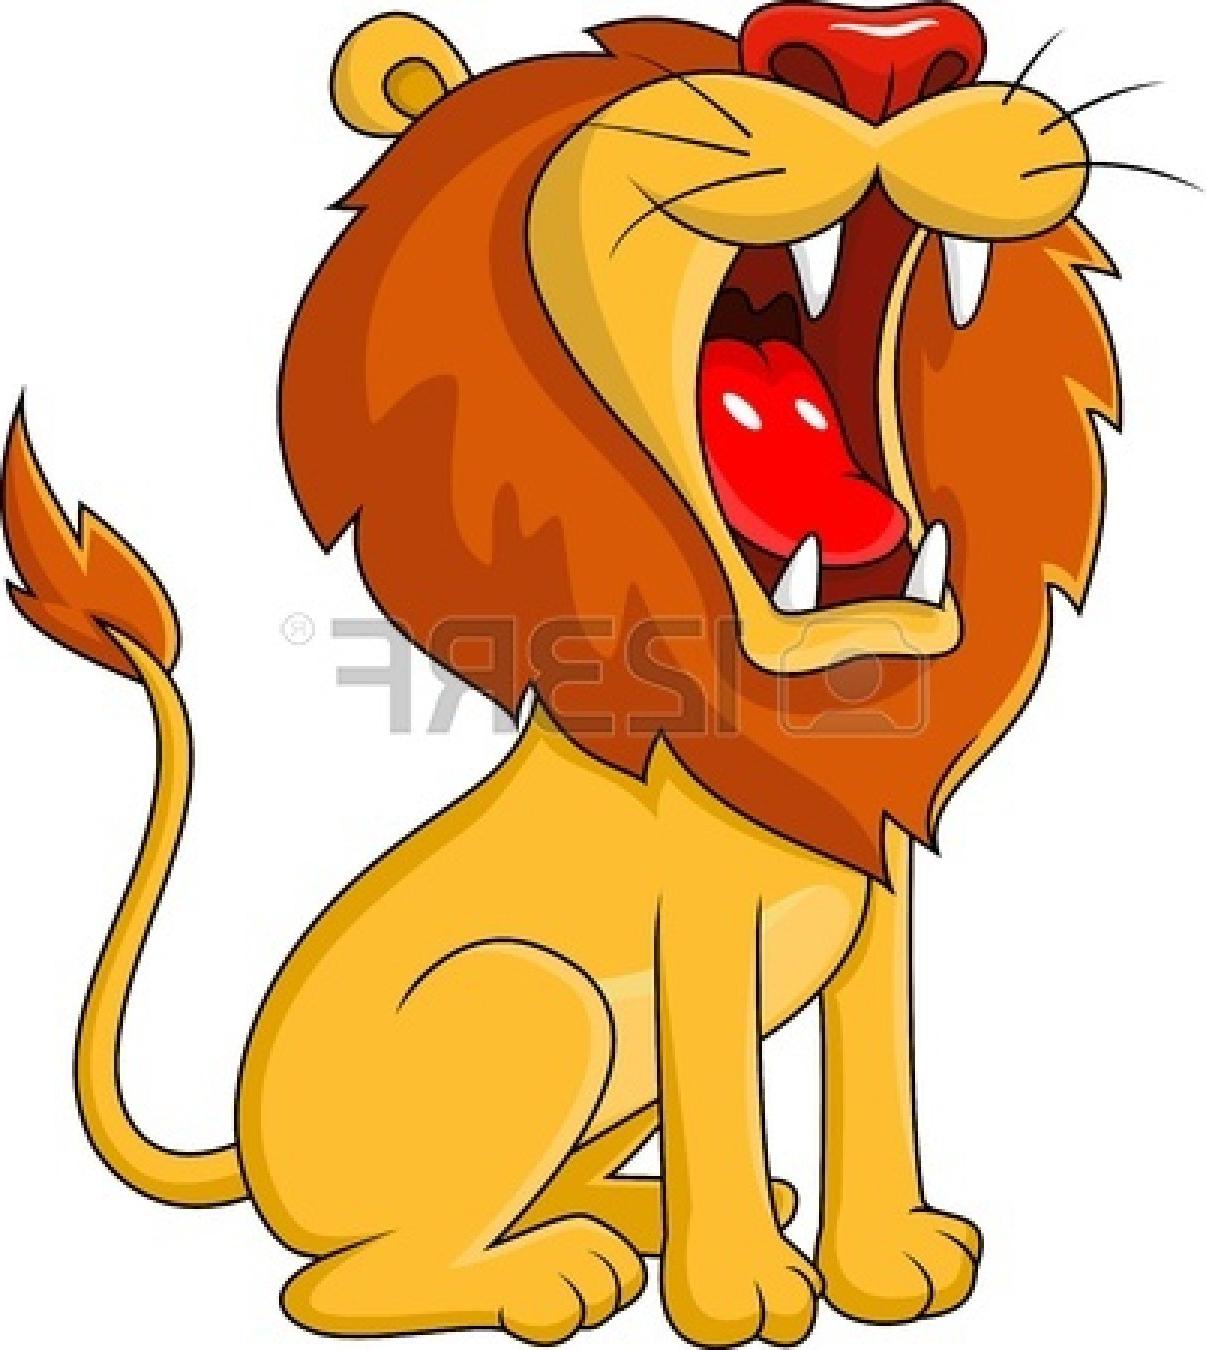 Free Roar Clipart fierce lion, Download Free Clip Art on